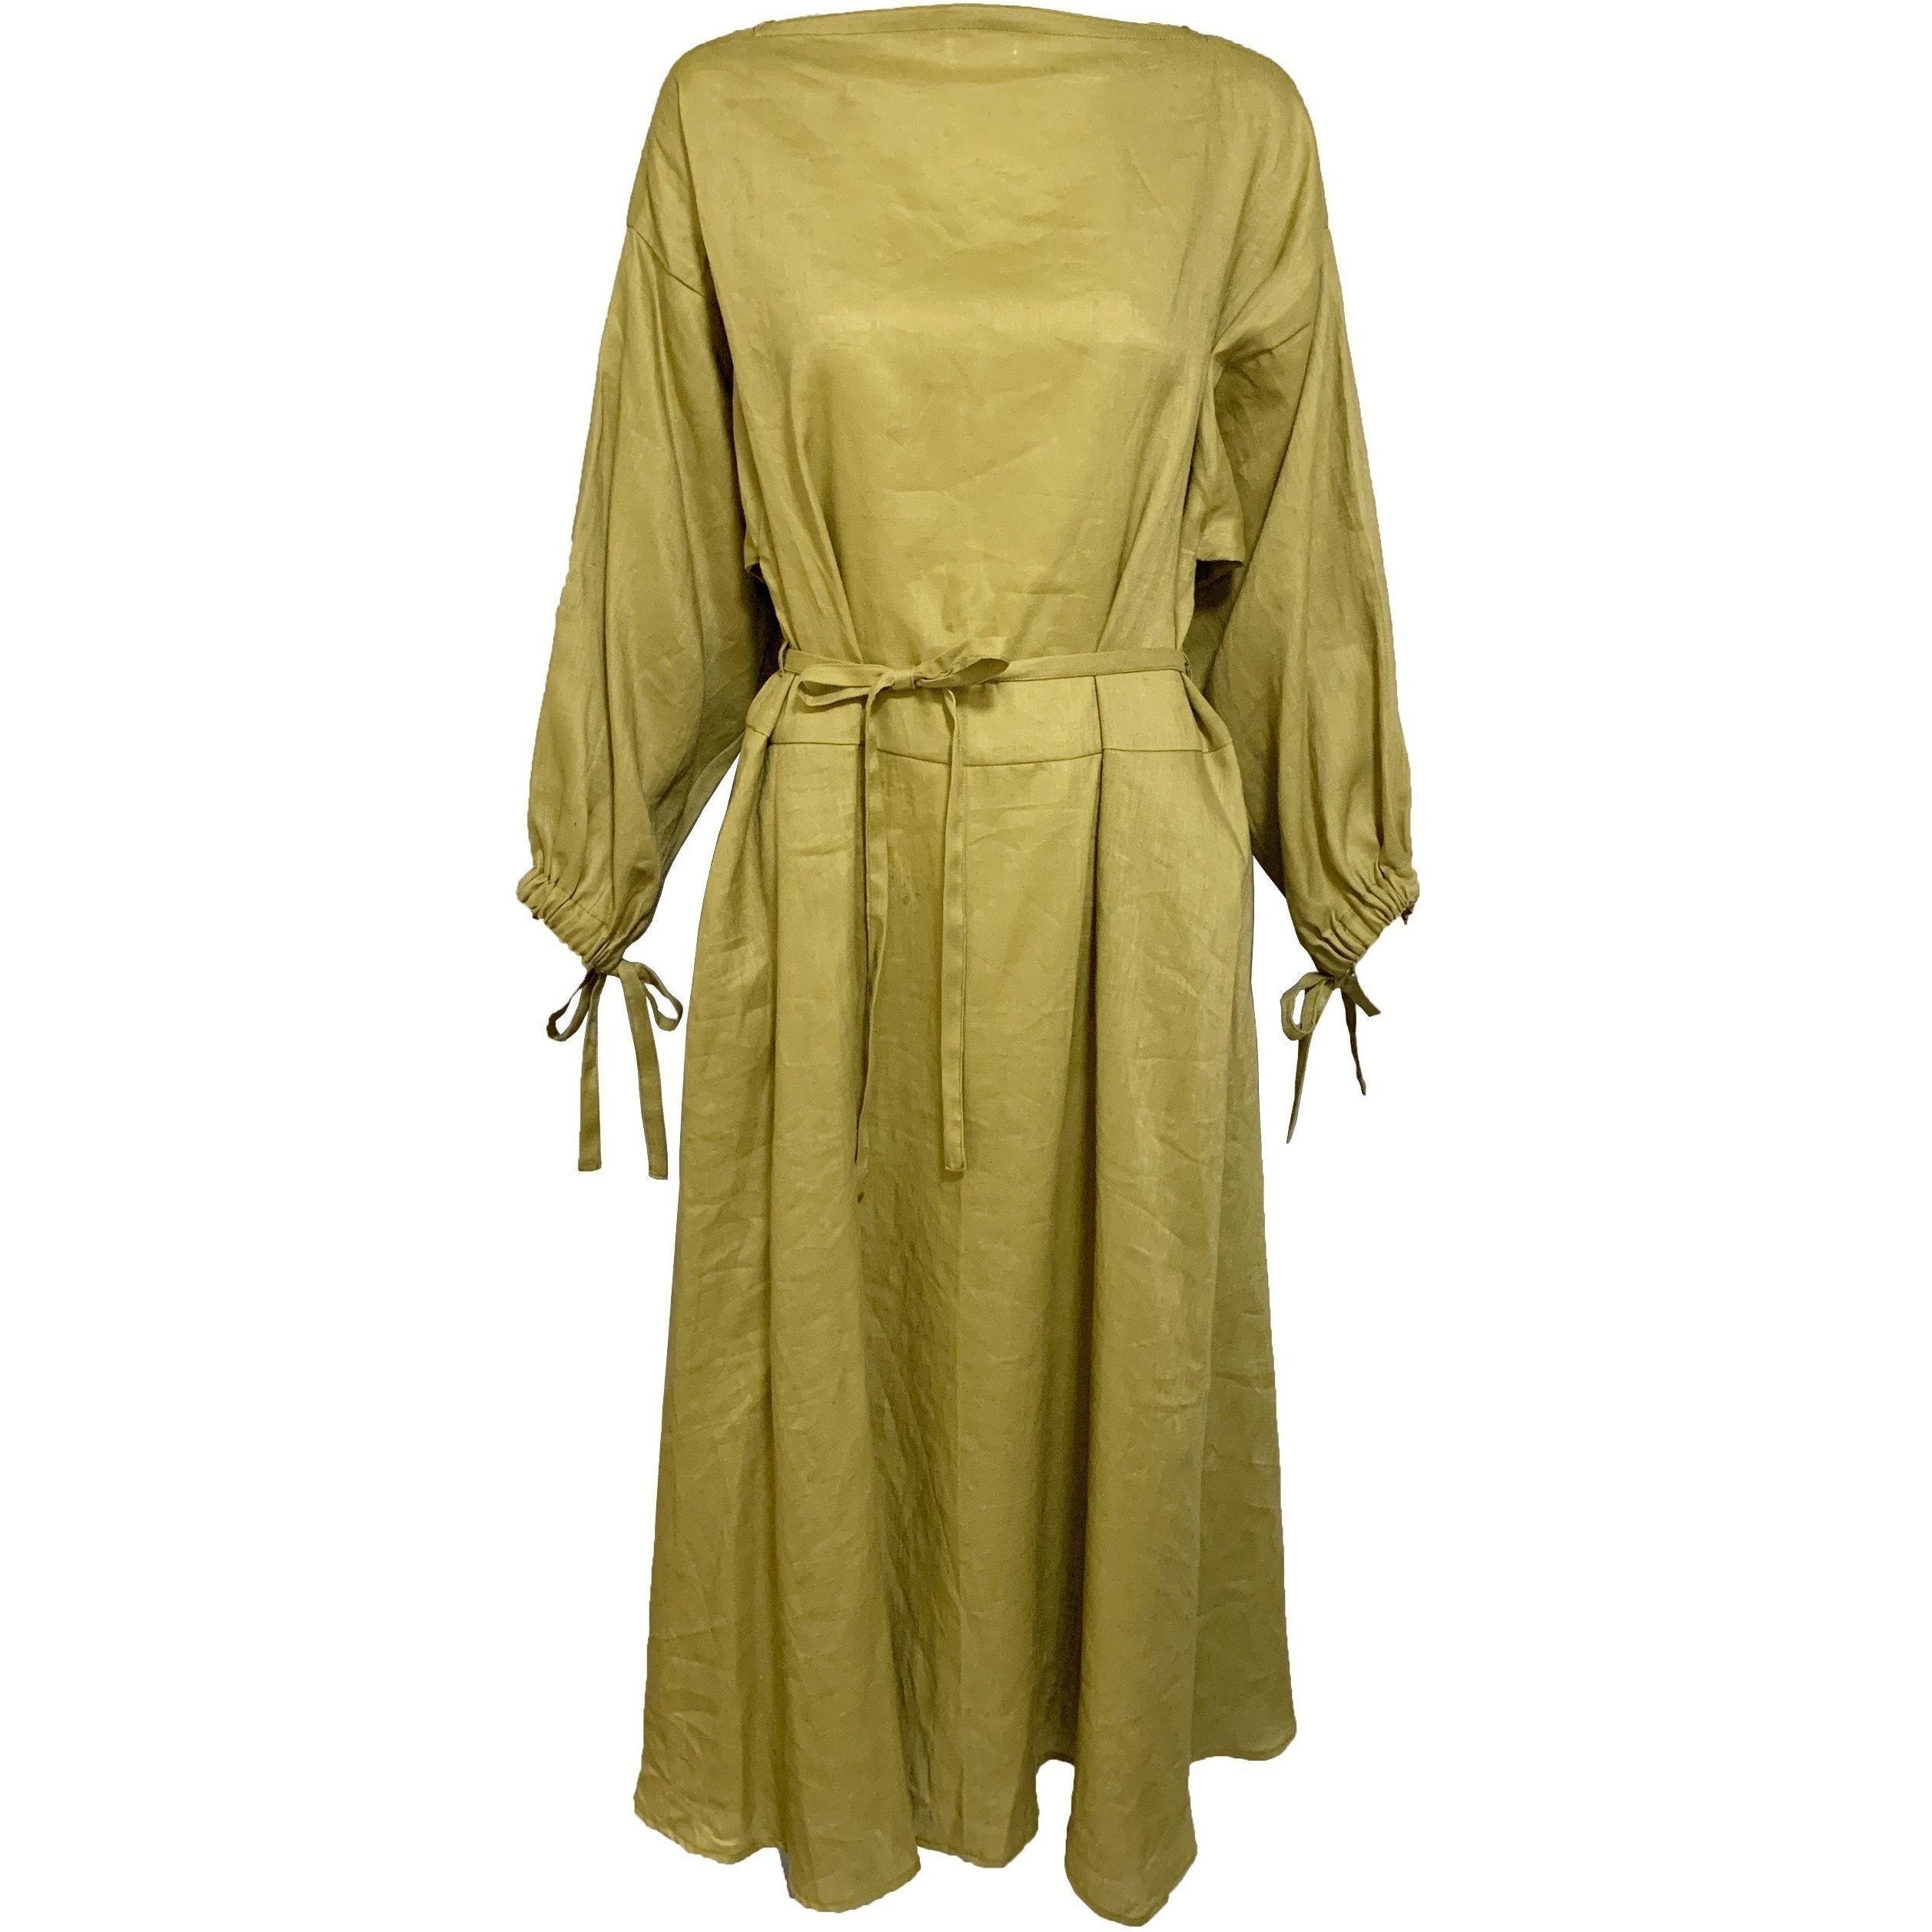 Mari Long Dress Olive - shop-olivia.com